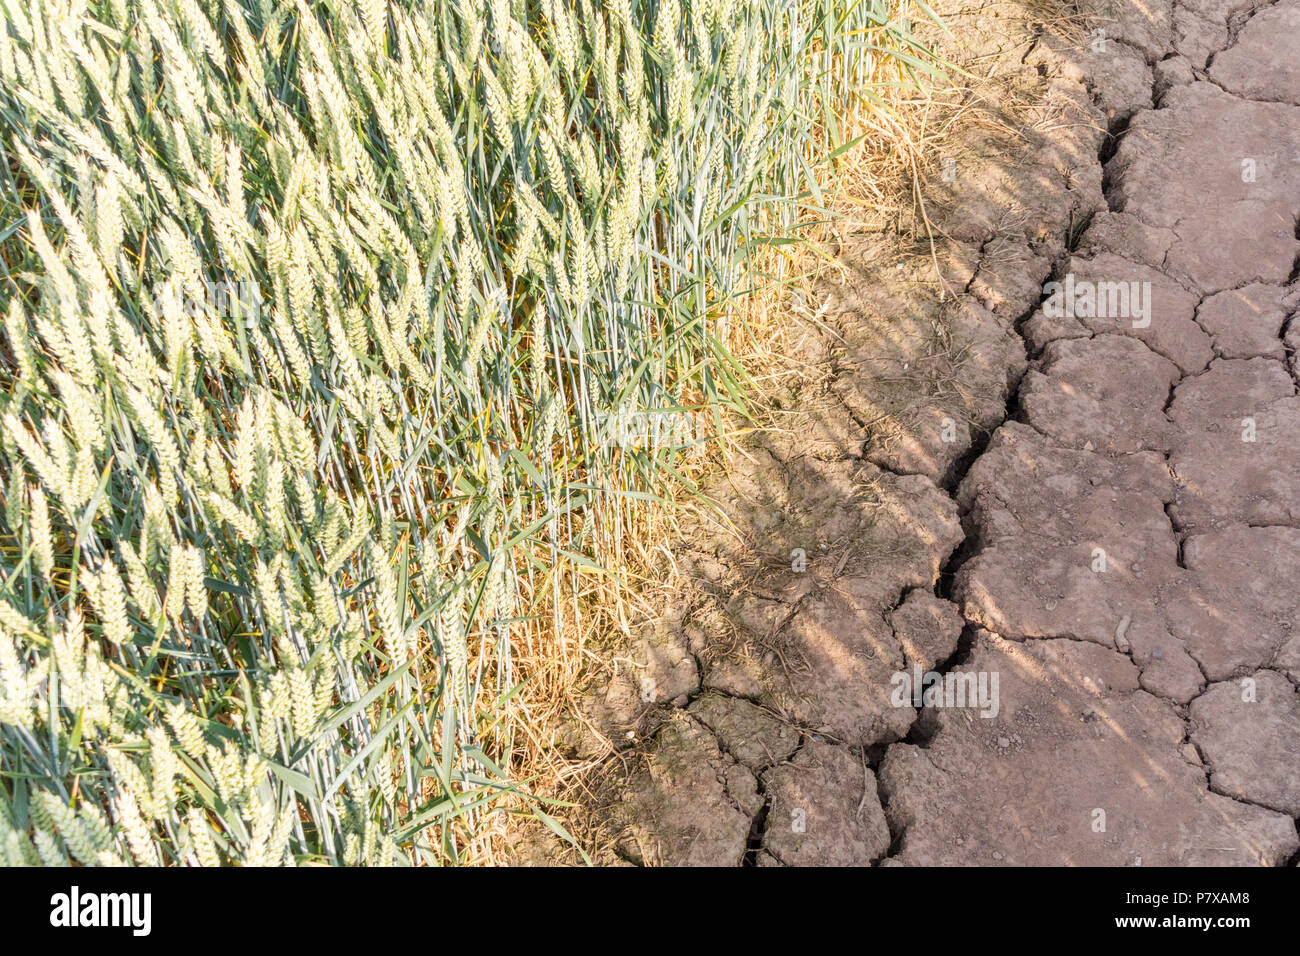 Julio de 2018 sequía estival en una acera pública en un campo de trigo, Inglaterra, Reino Unido, Inglaterra, Reino Unido. Foto de stock